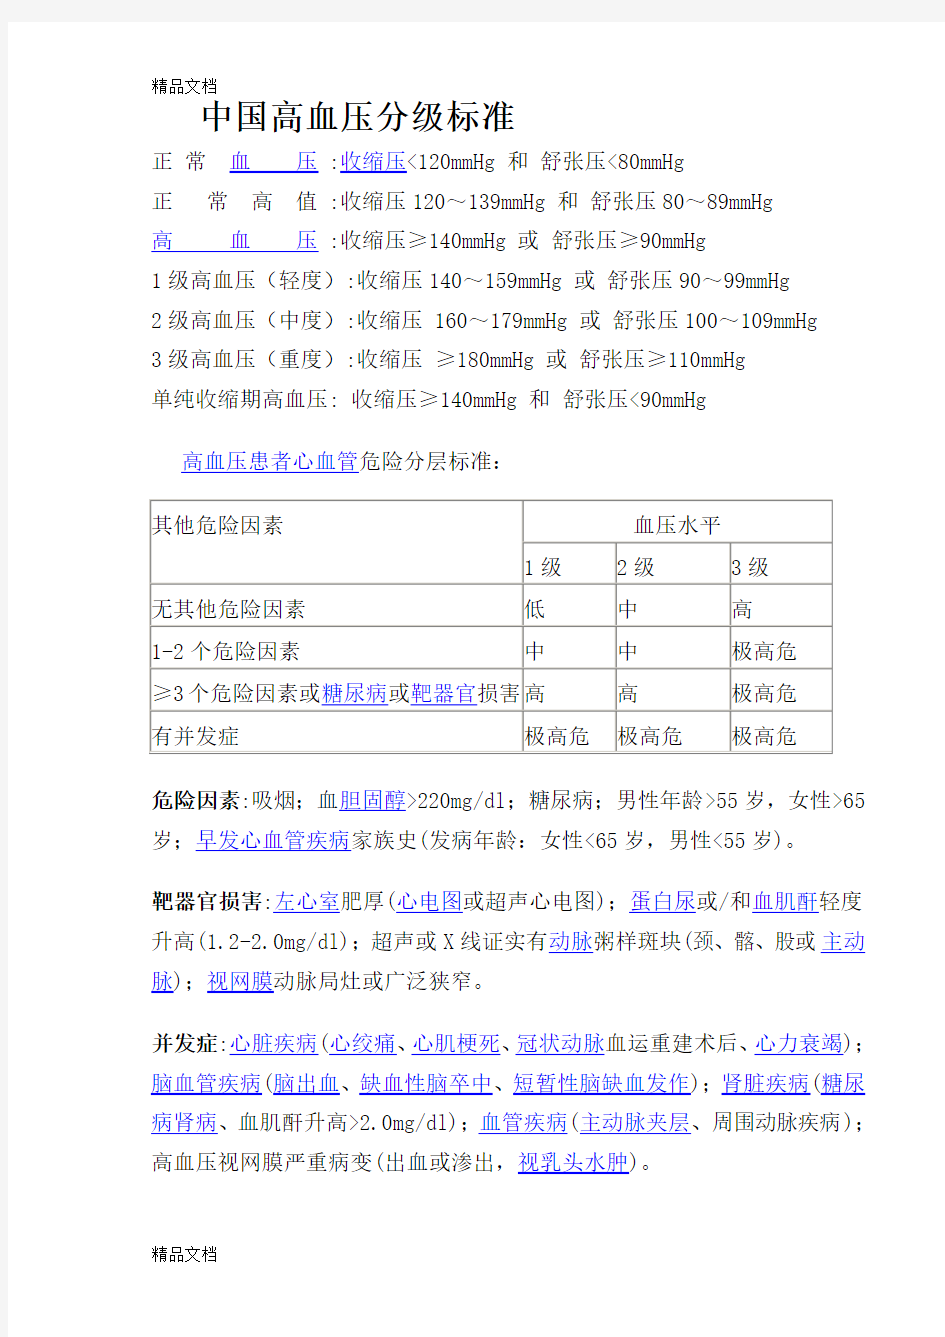 最新中国高血压分级标准